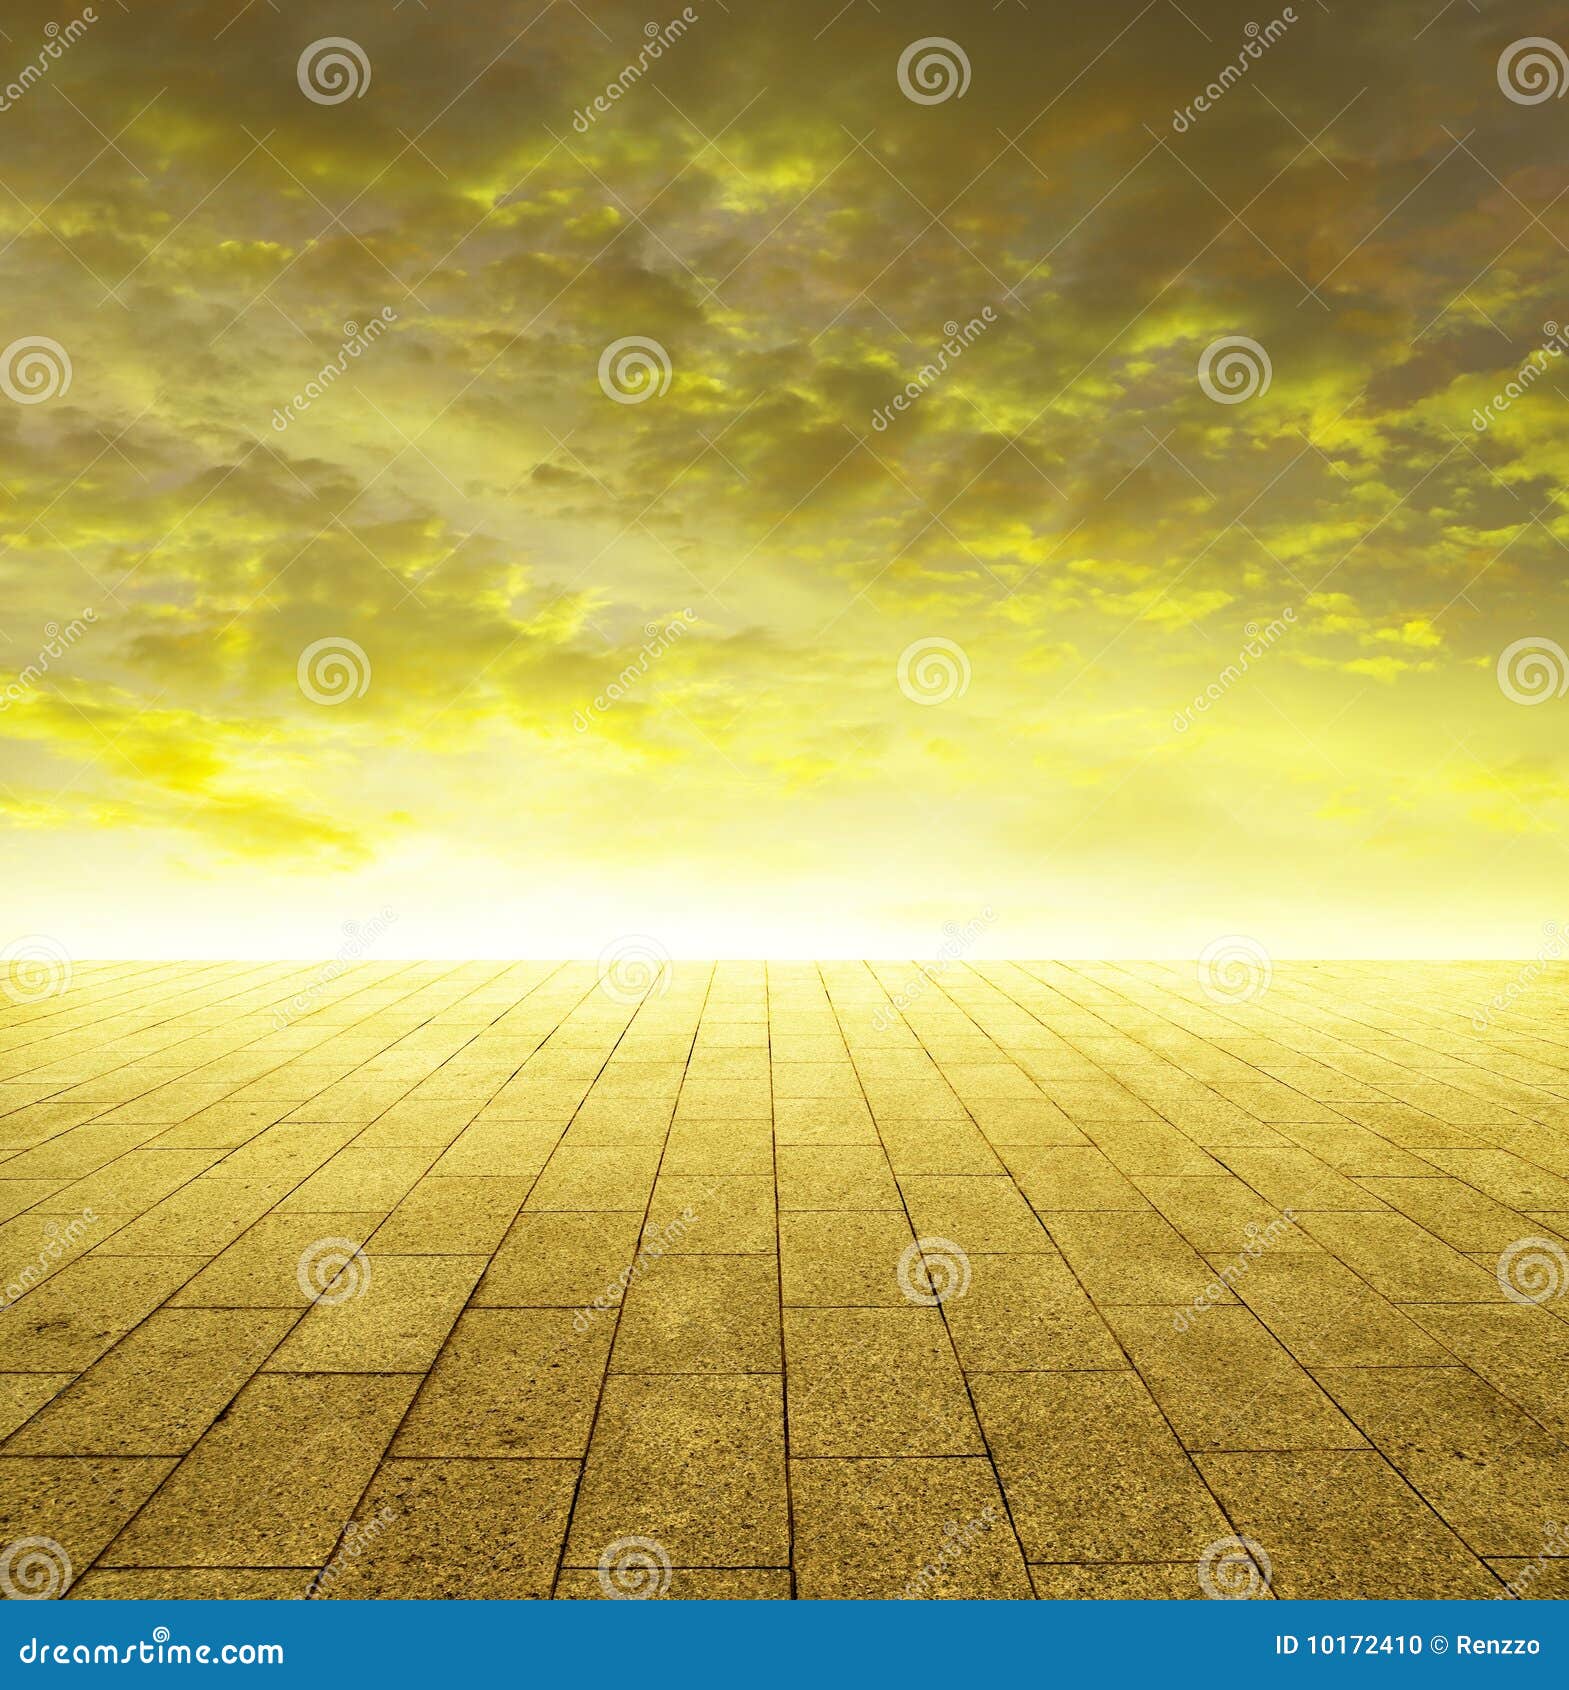 Shining golden horizon stock photo. Image of peace, sunshine - 10172410